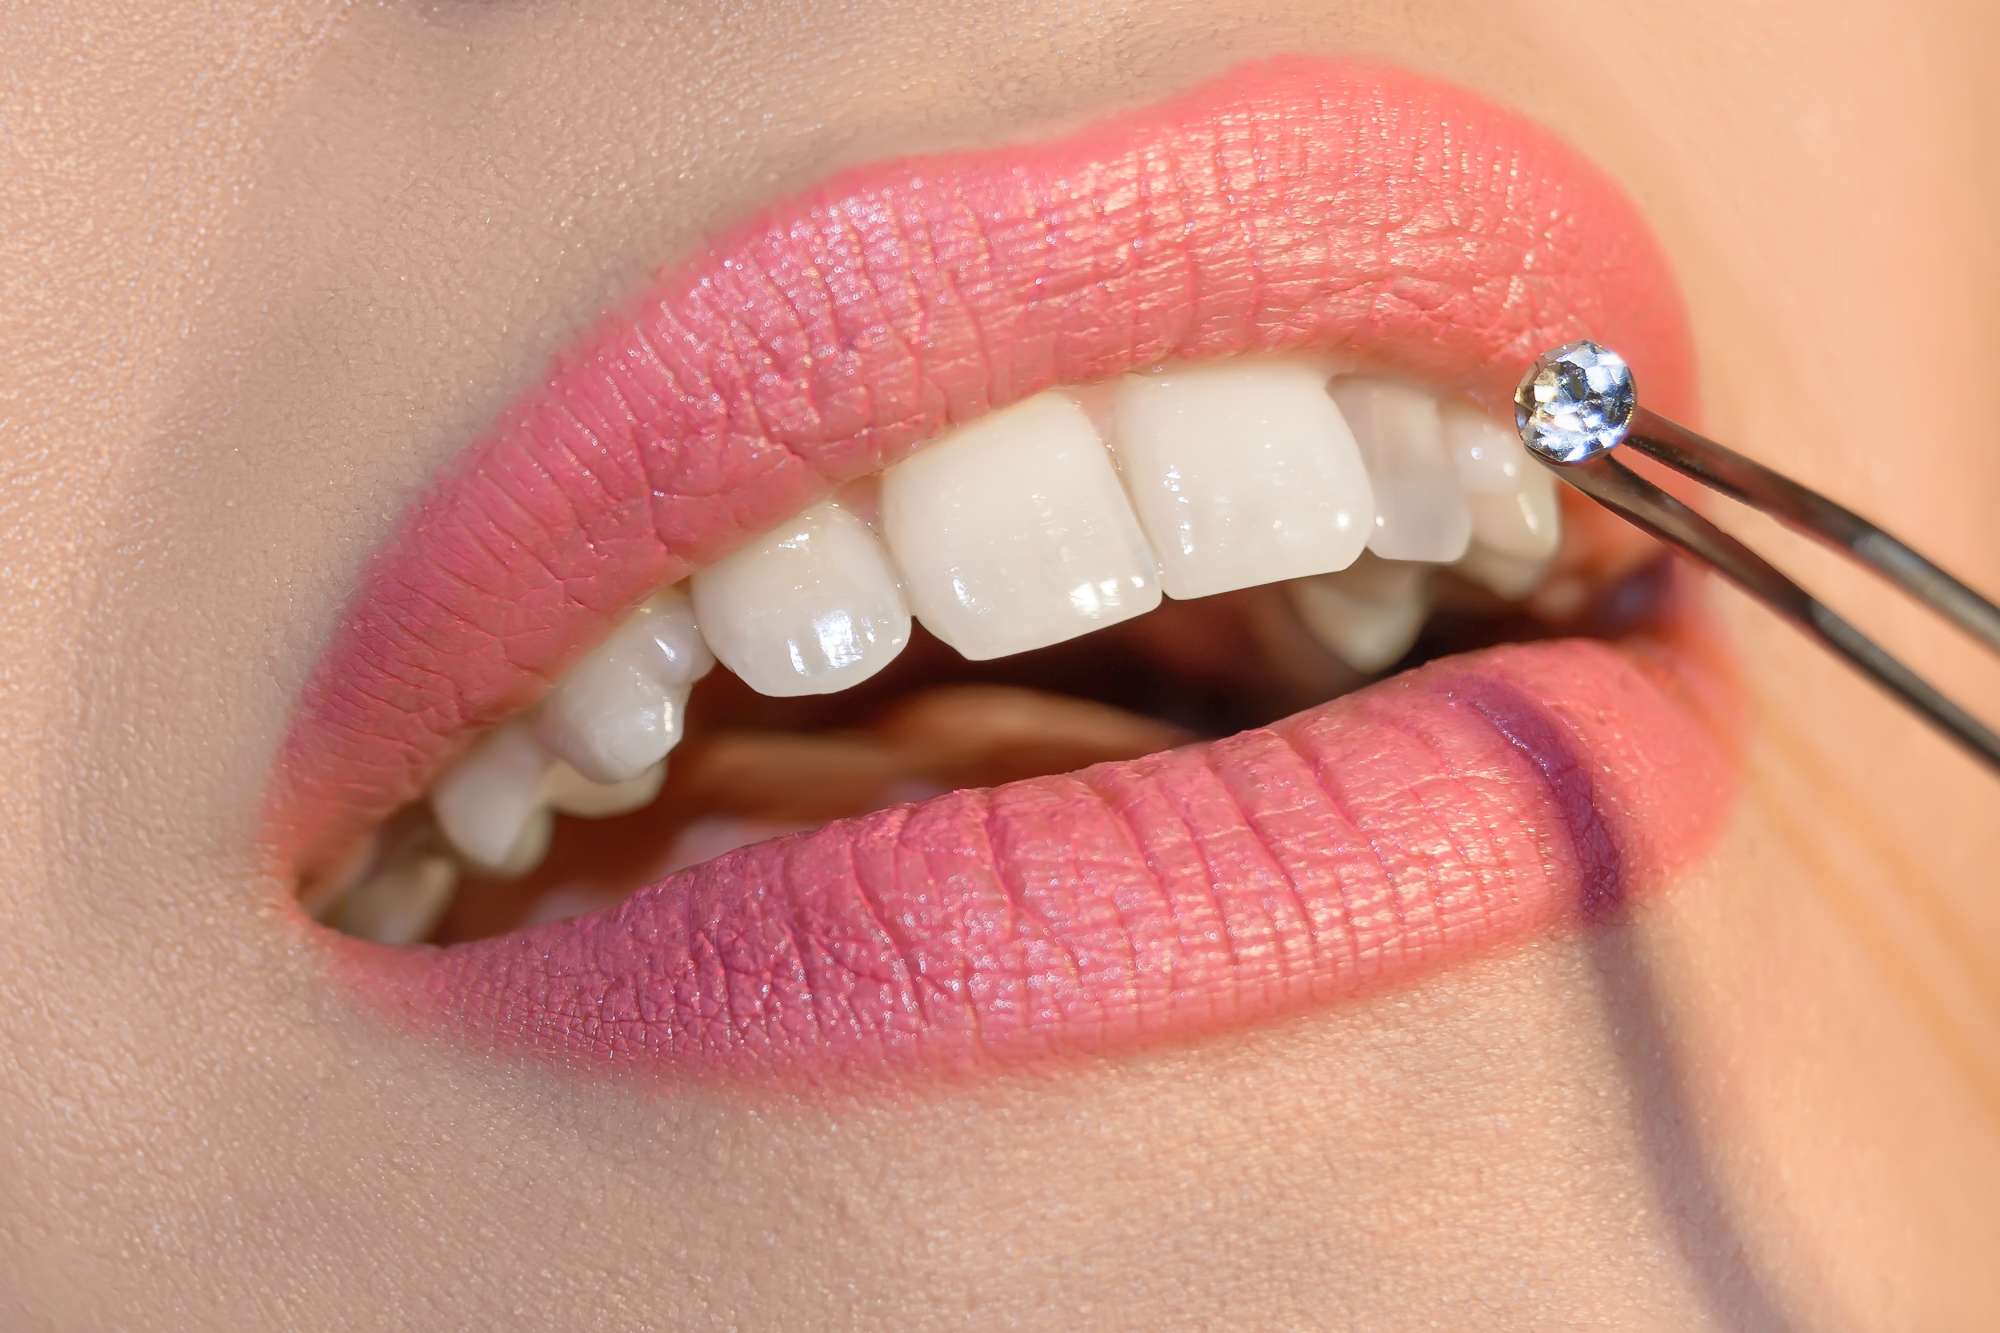 Tooth gems, scopri la moda dei brillantini sui denti - Donna Moderna